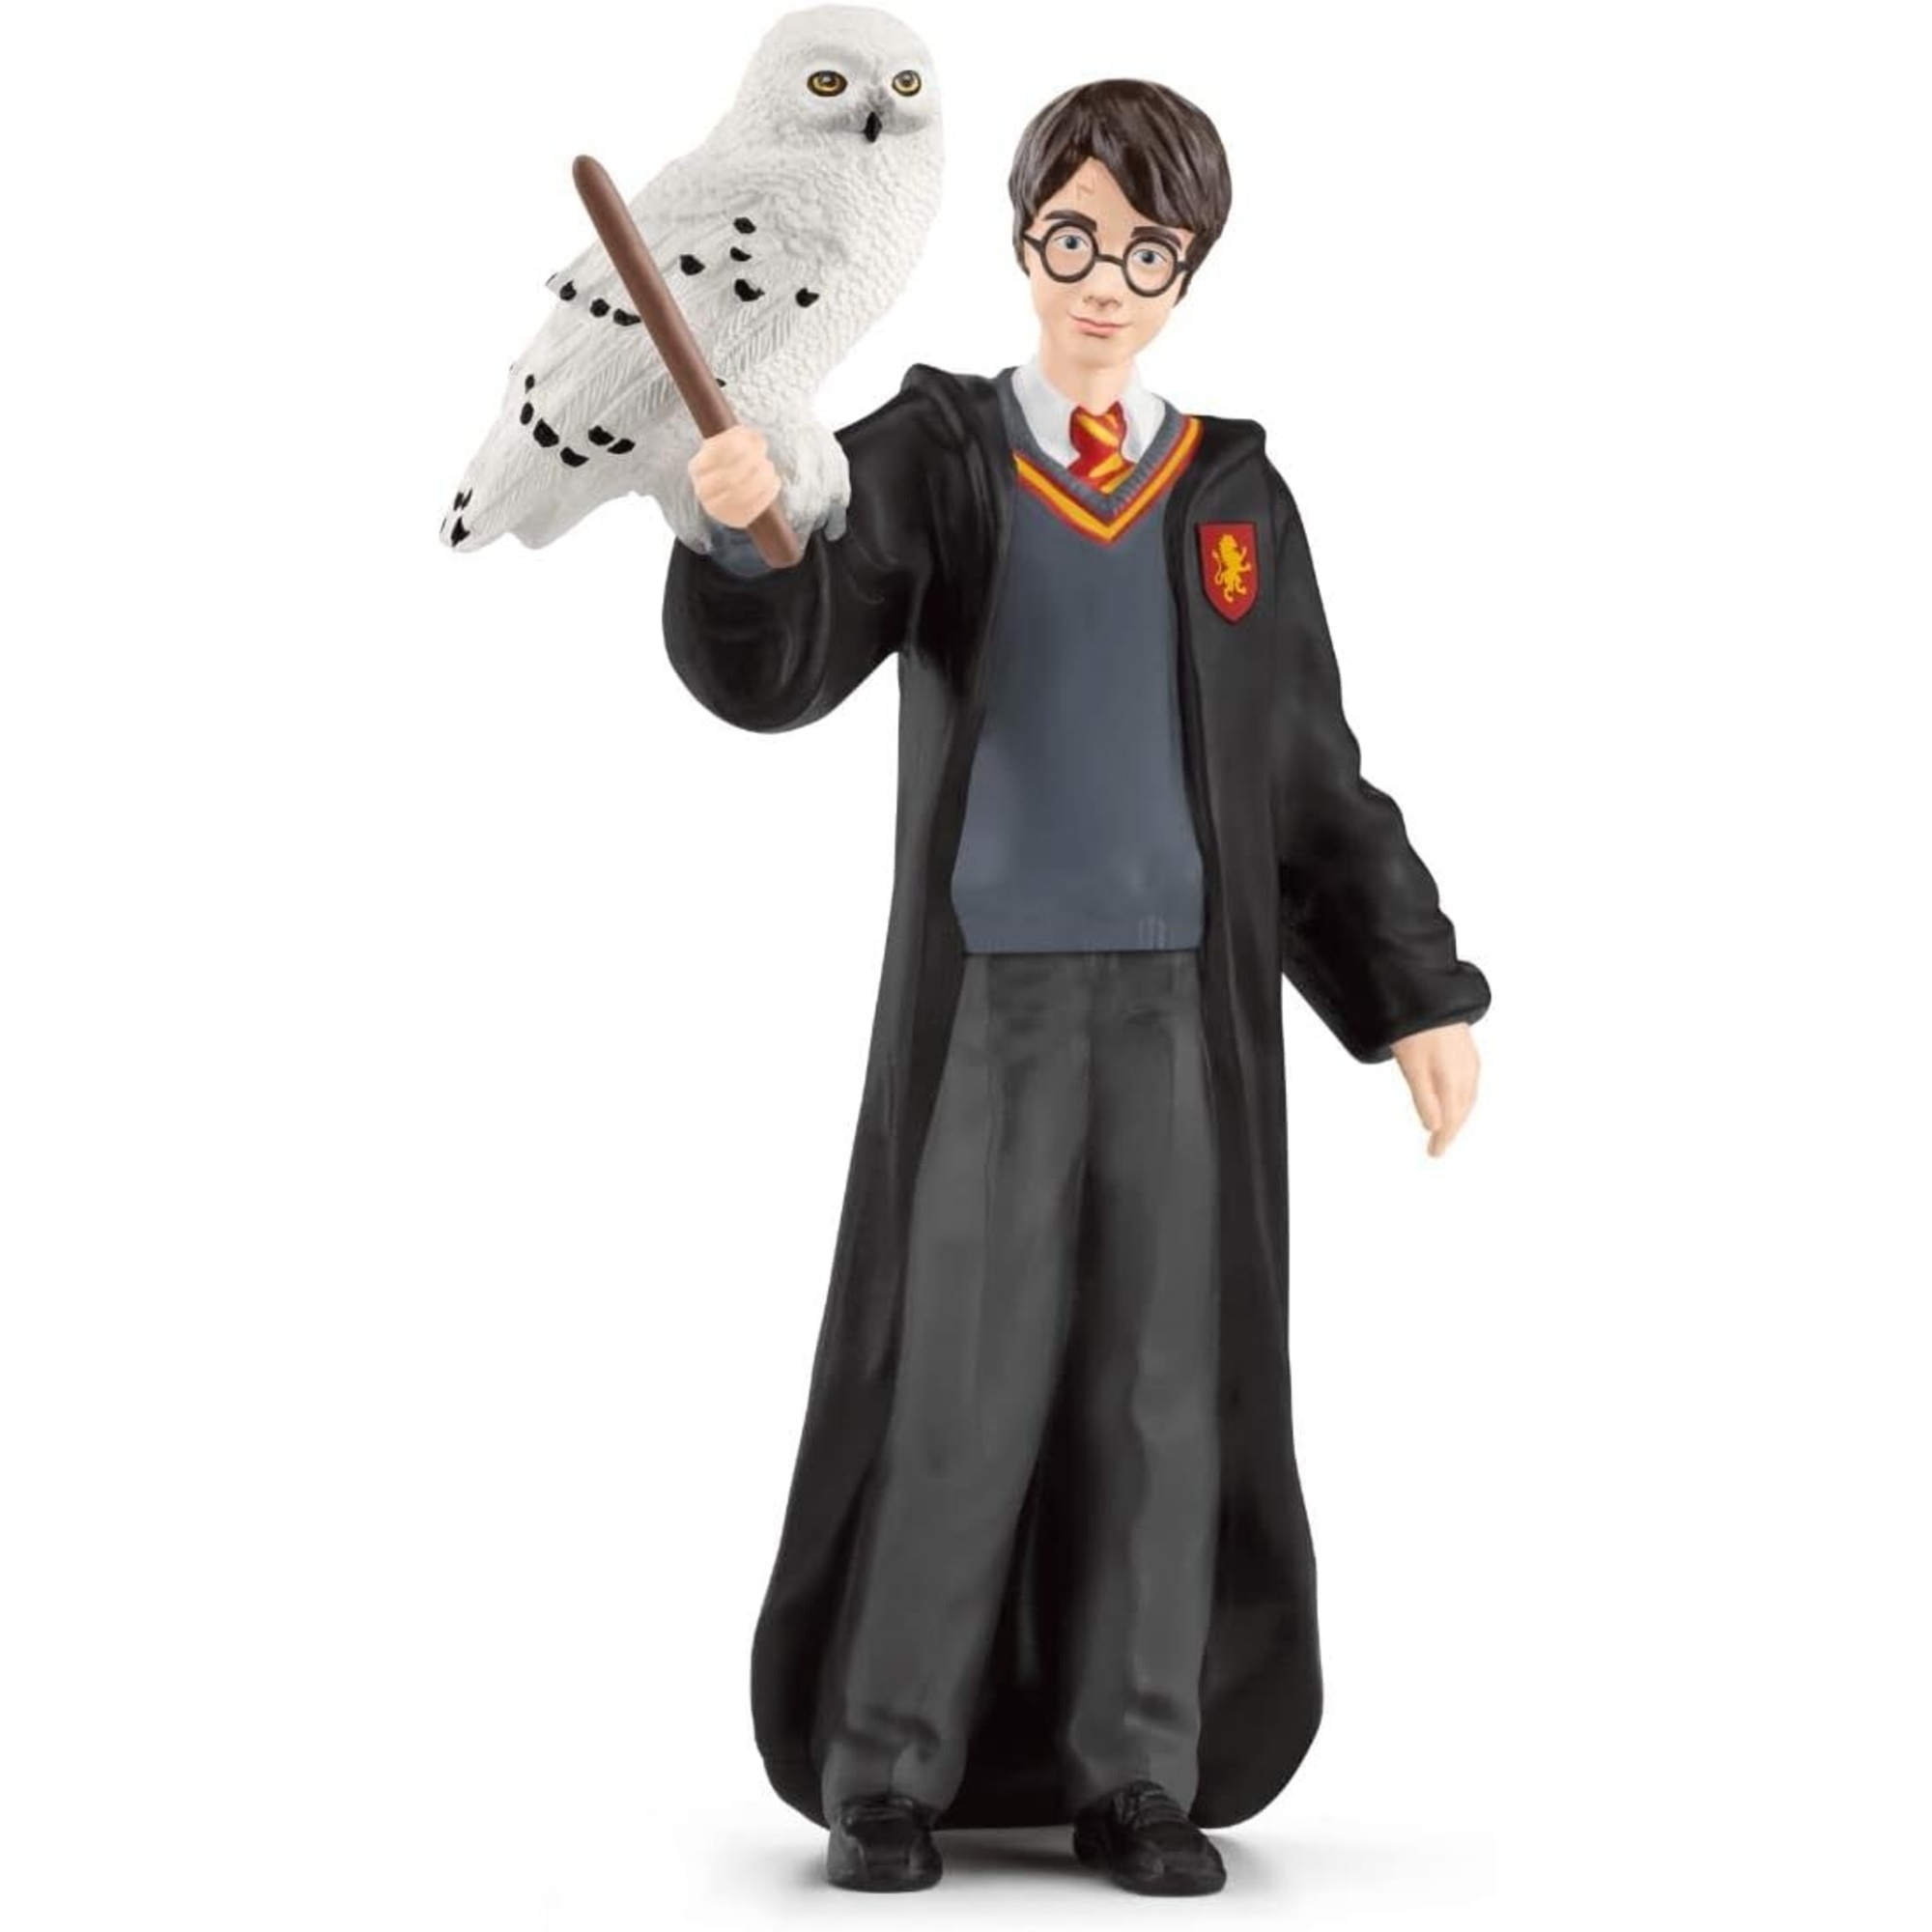 Schleich 42633 harry & edvige, da 6 anni, wizarding world - figura, 4 x 2,5 x 10 cm - Harry Potter, Schleich